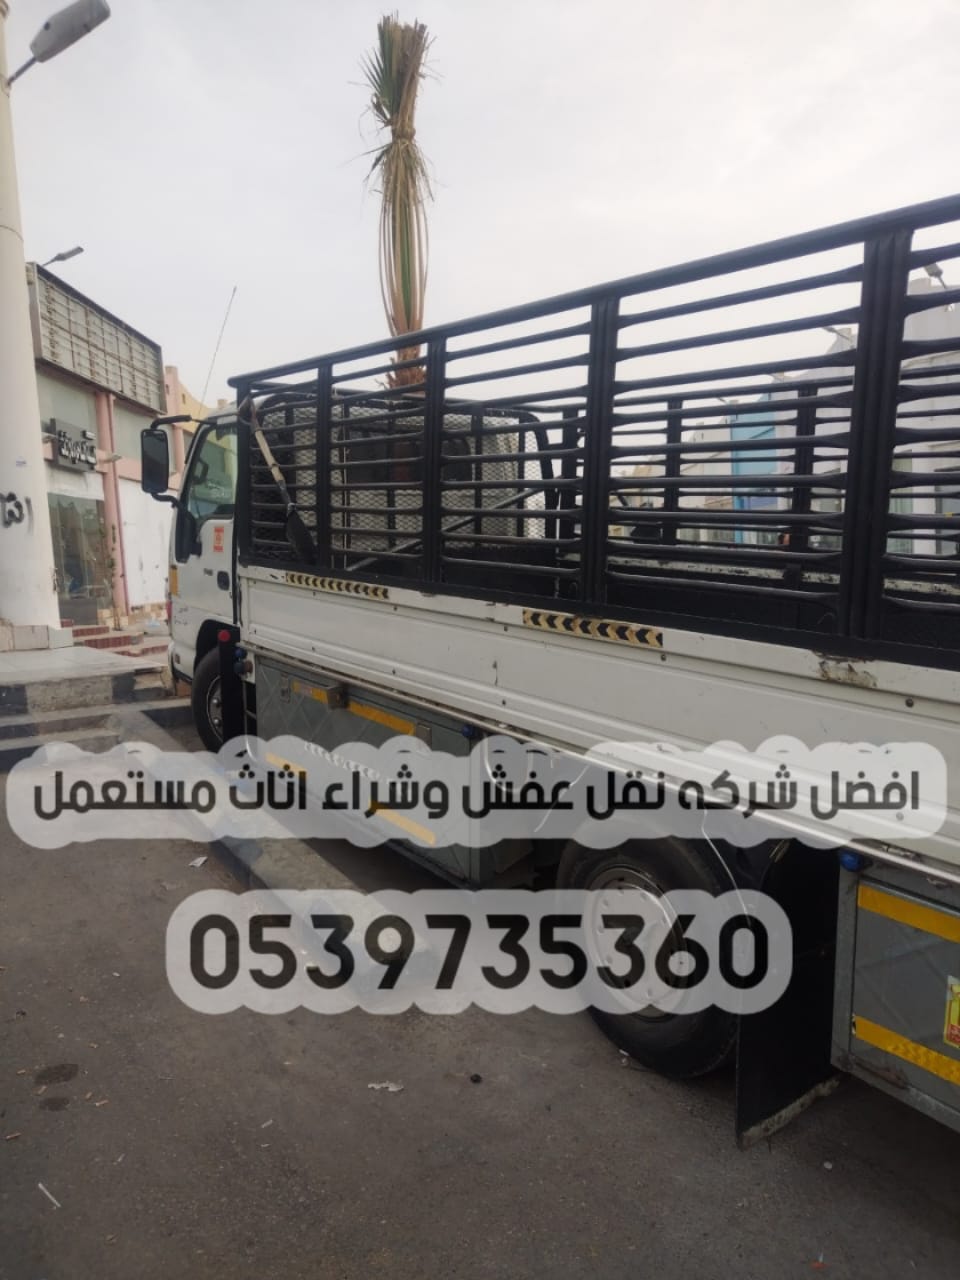 دينا نقل عفش خارج الرياض 0539735360 توصيل الأثاث مشاوير 171061166175021